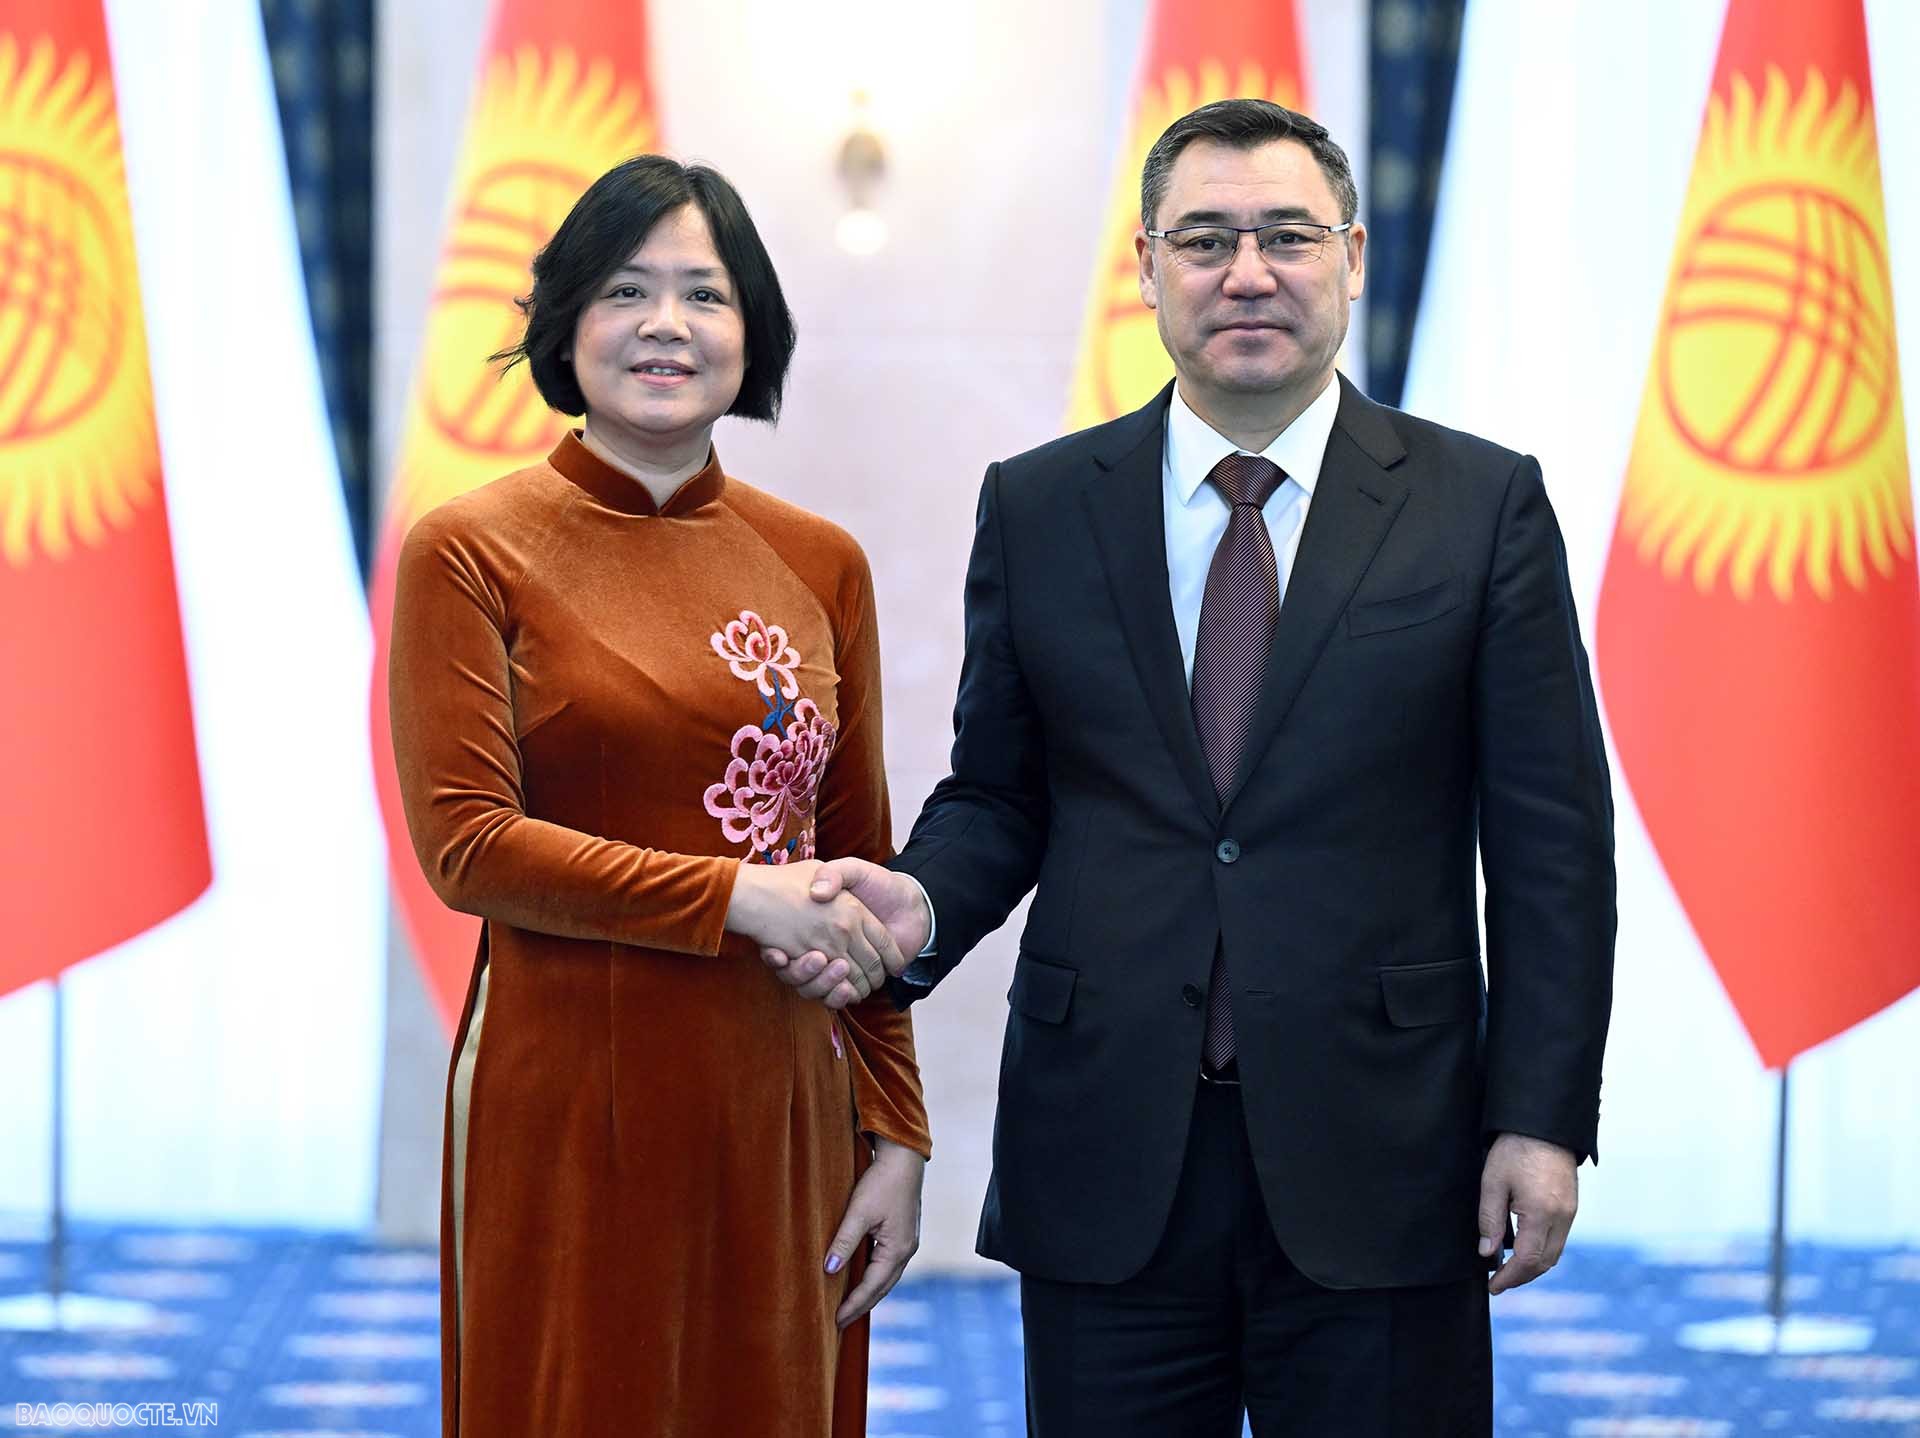 Đại sứ Phạm Thái Như Mai trình Thư ủy nhiệm lên Tổng thống Kyrgyzstan Sadyr Japarov.